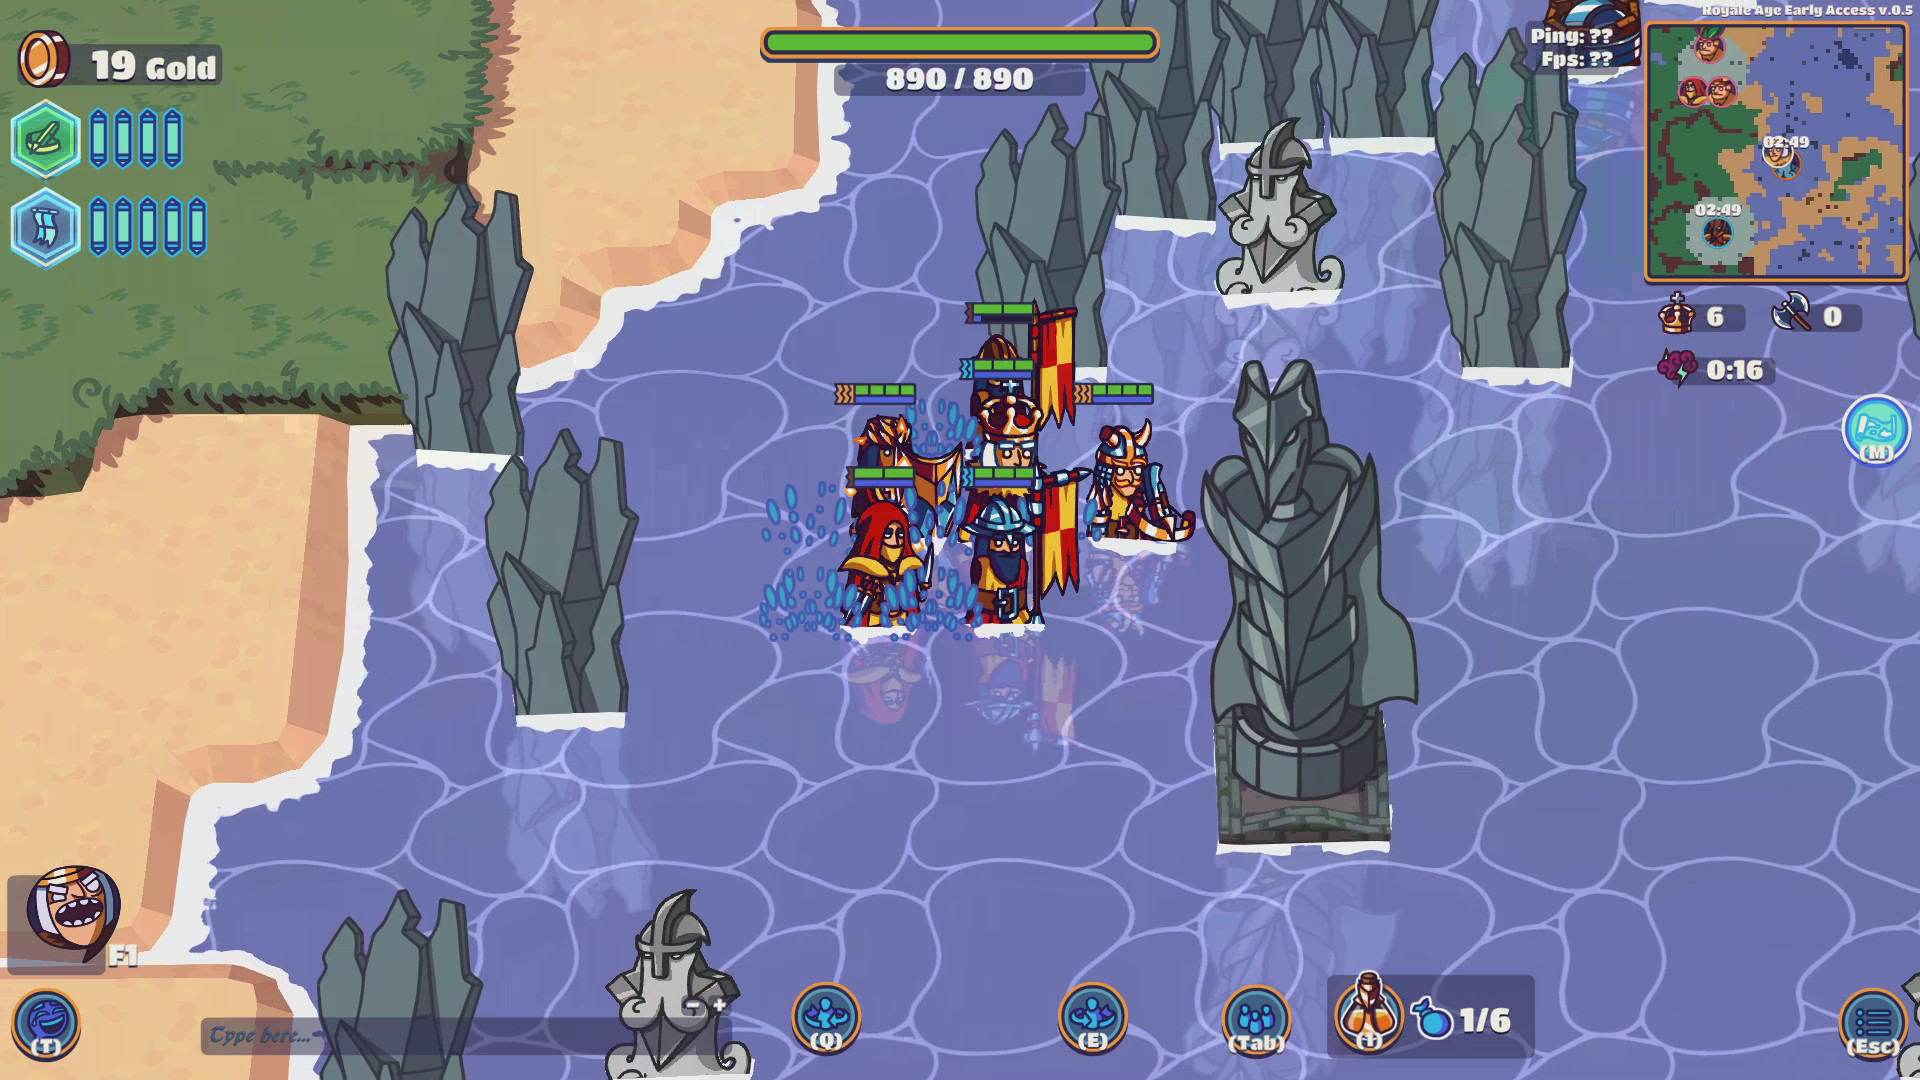 Royale Age: Battle of Kings screenshot